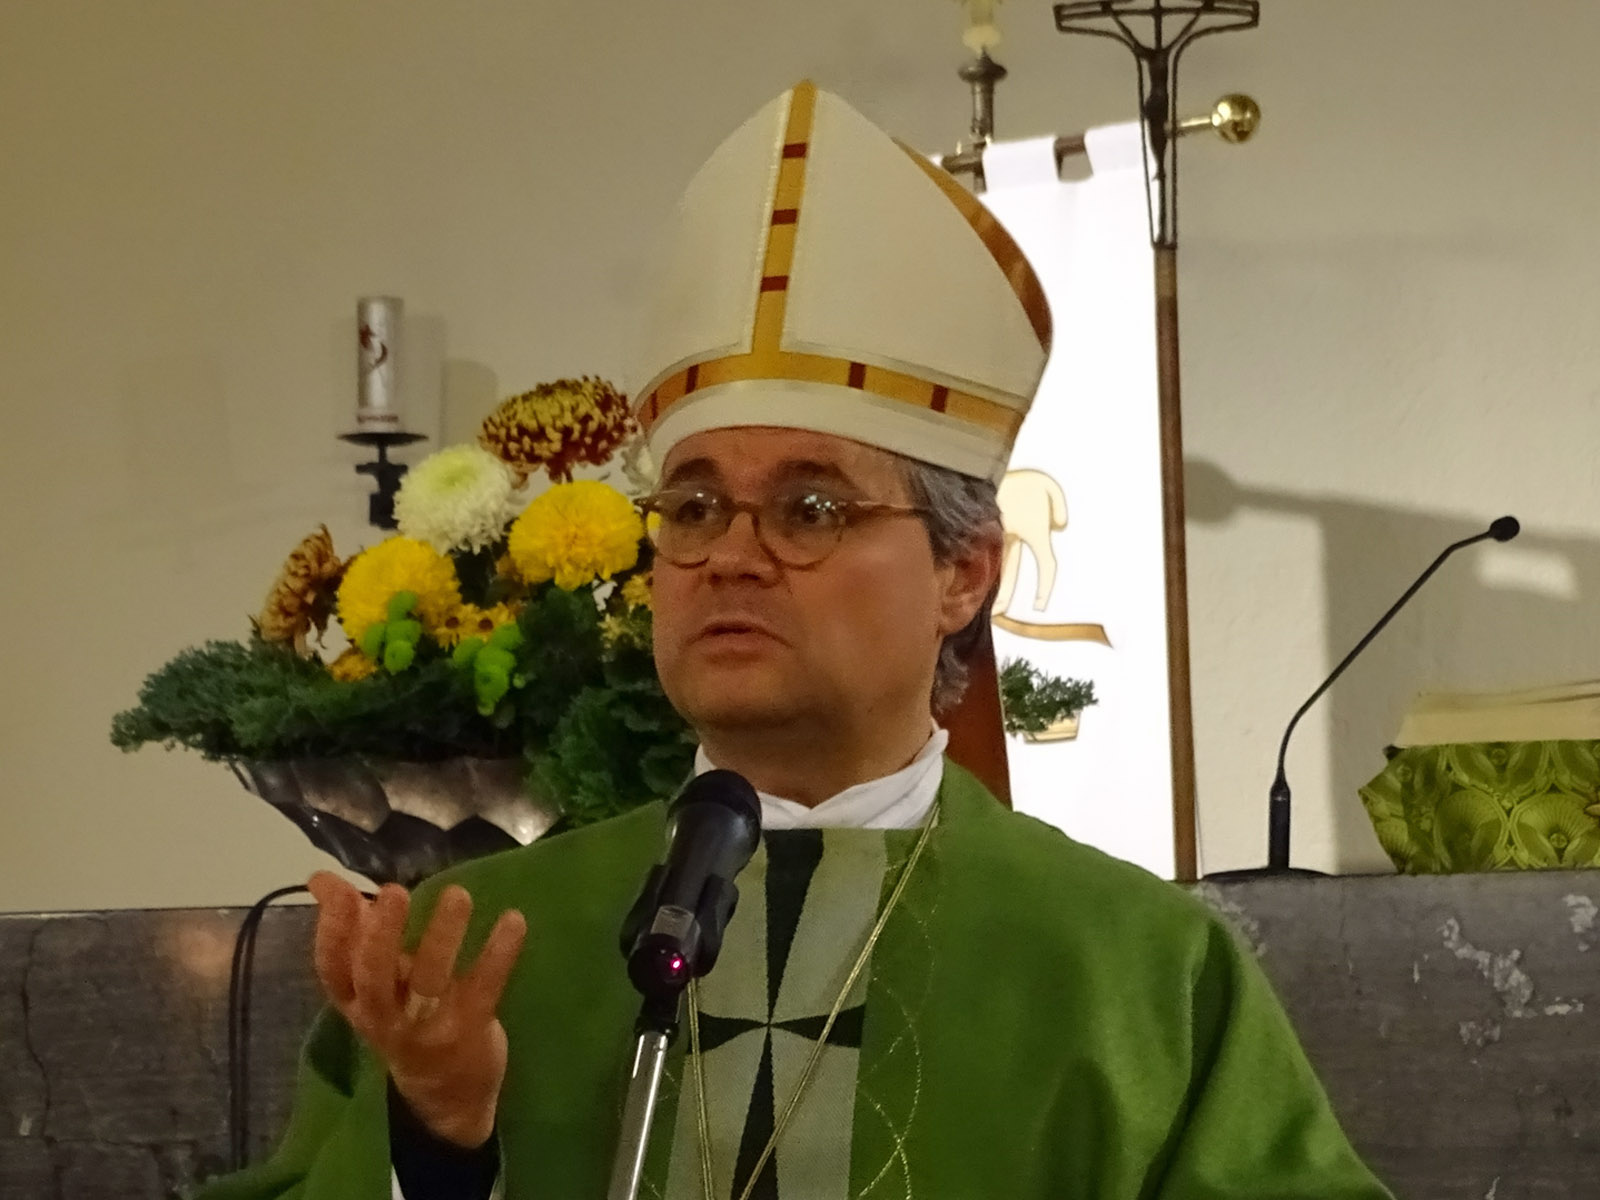 Groß-Gerau, 07.11.2019: Weihbischof Dr. Udo Markus Bentz war zur Visitation im Pfarreienverbund Groß-Gerau / Büttelborn. (c) Markus Schenk